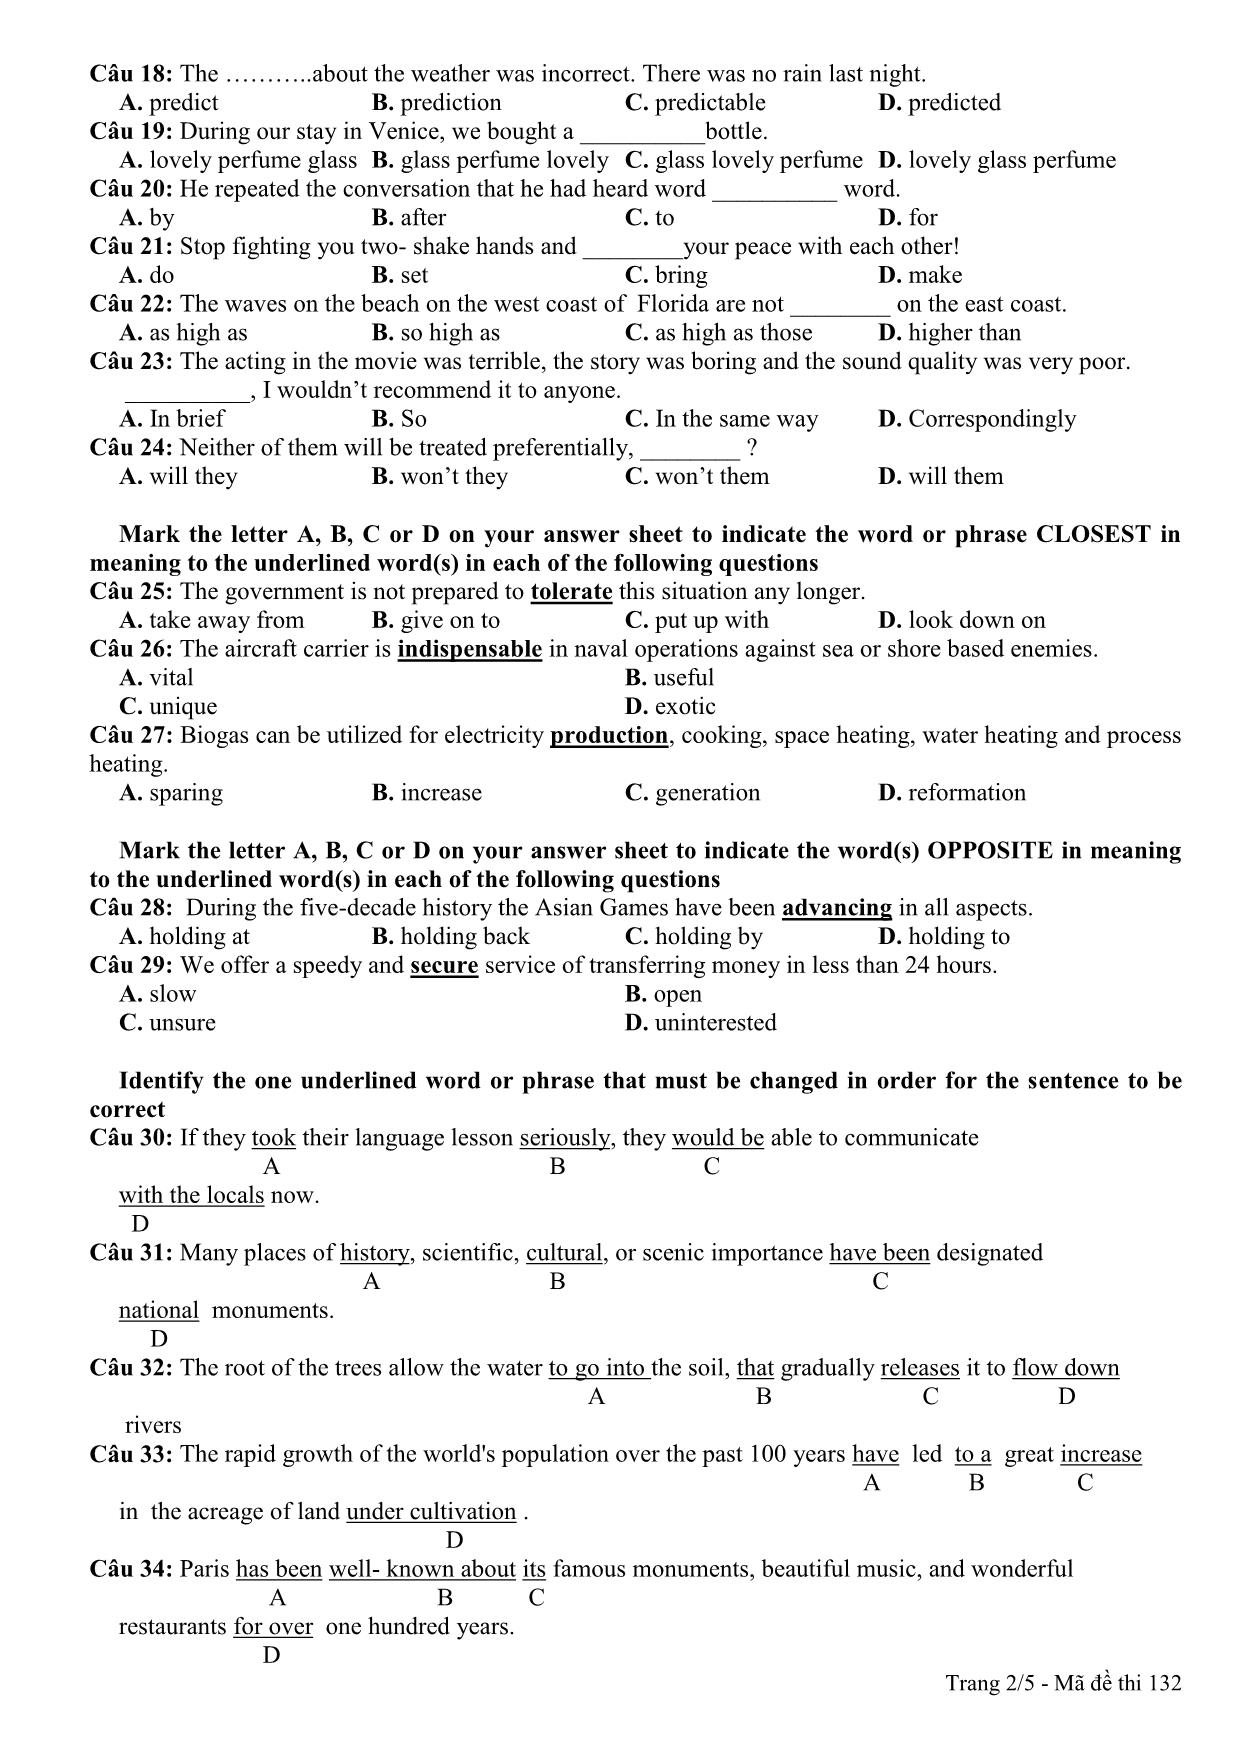 Đề thi thử THPT Quốc gia môn Tiếng Anh lần 3 - Mã đề 132 - Năm học 2014-2015 - Trường THPT Hàn Thuyên (Có đáp án) trang 2